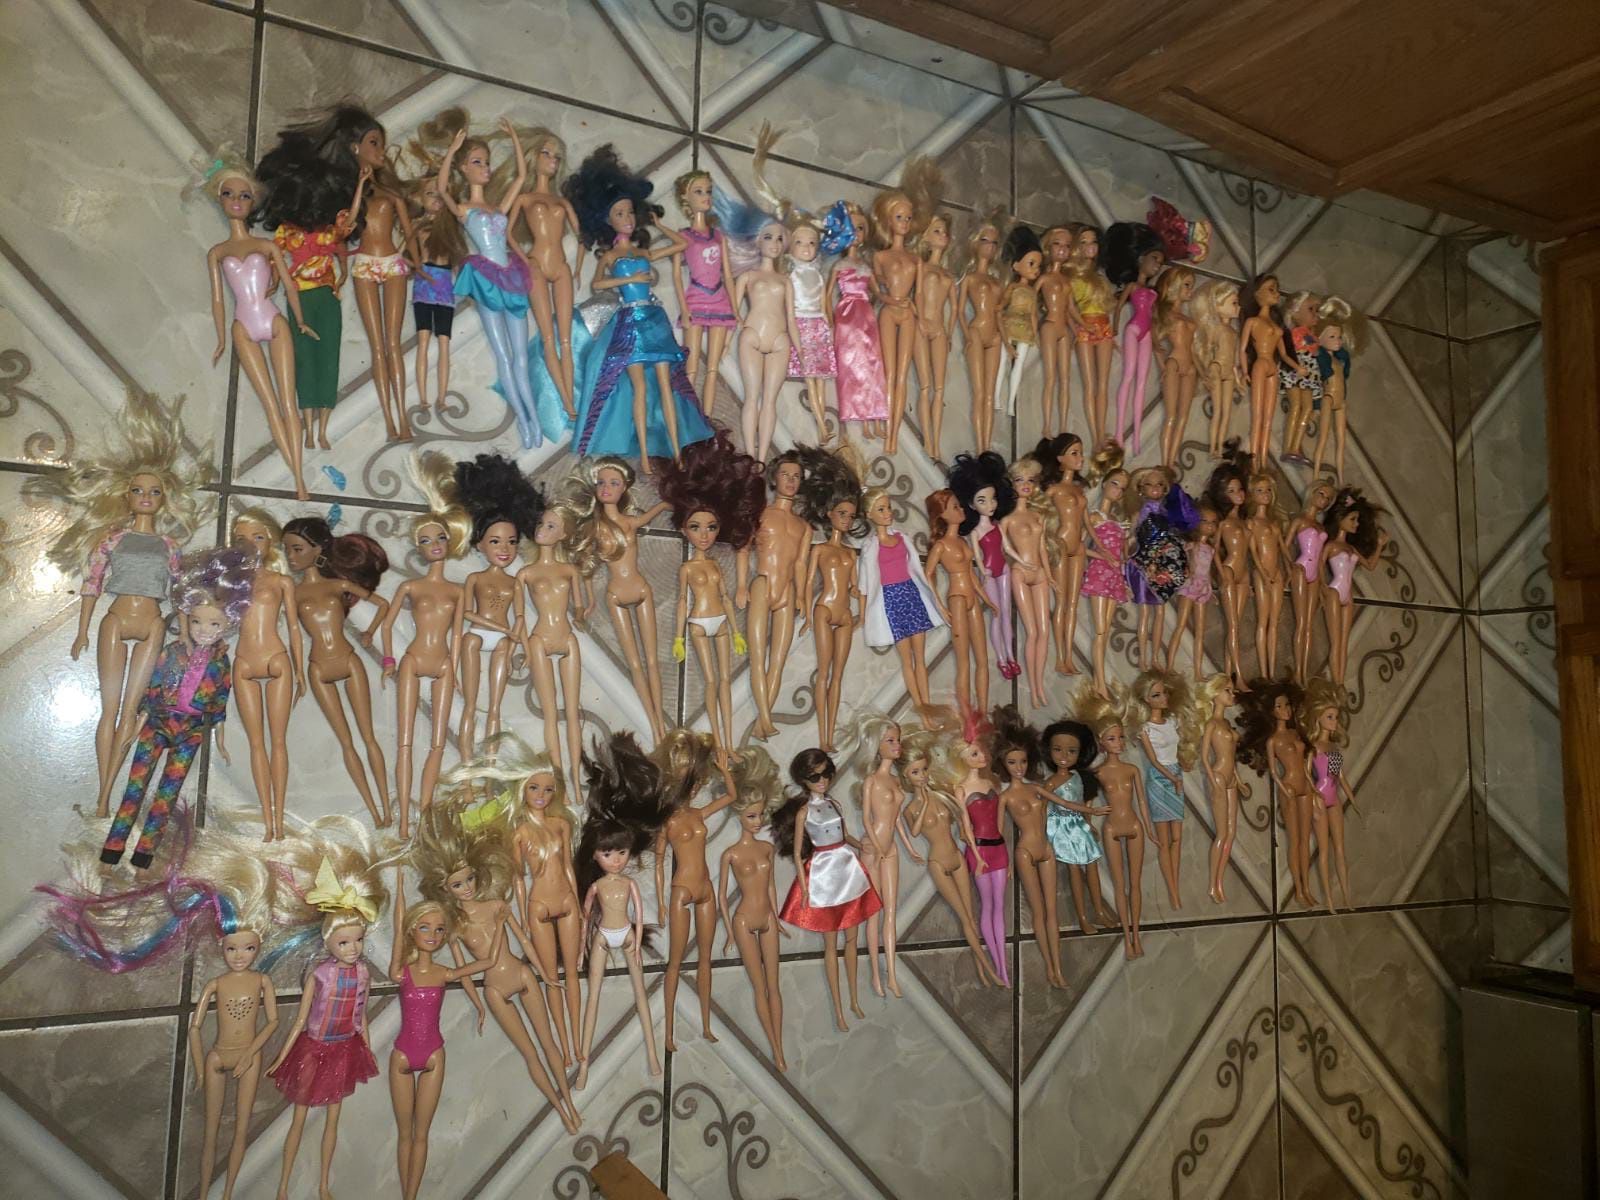 Barbie dolls $1each